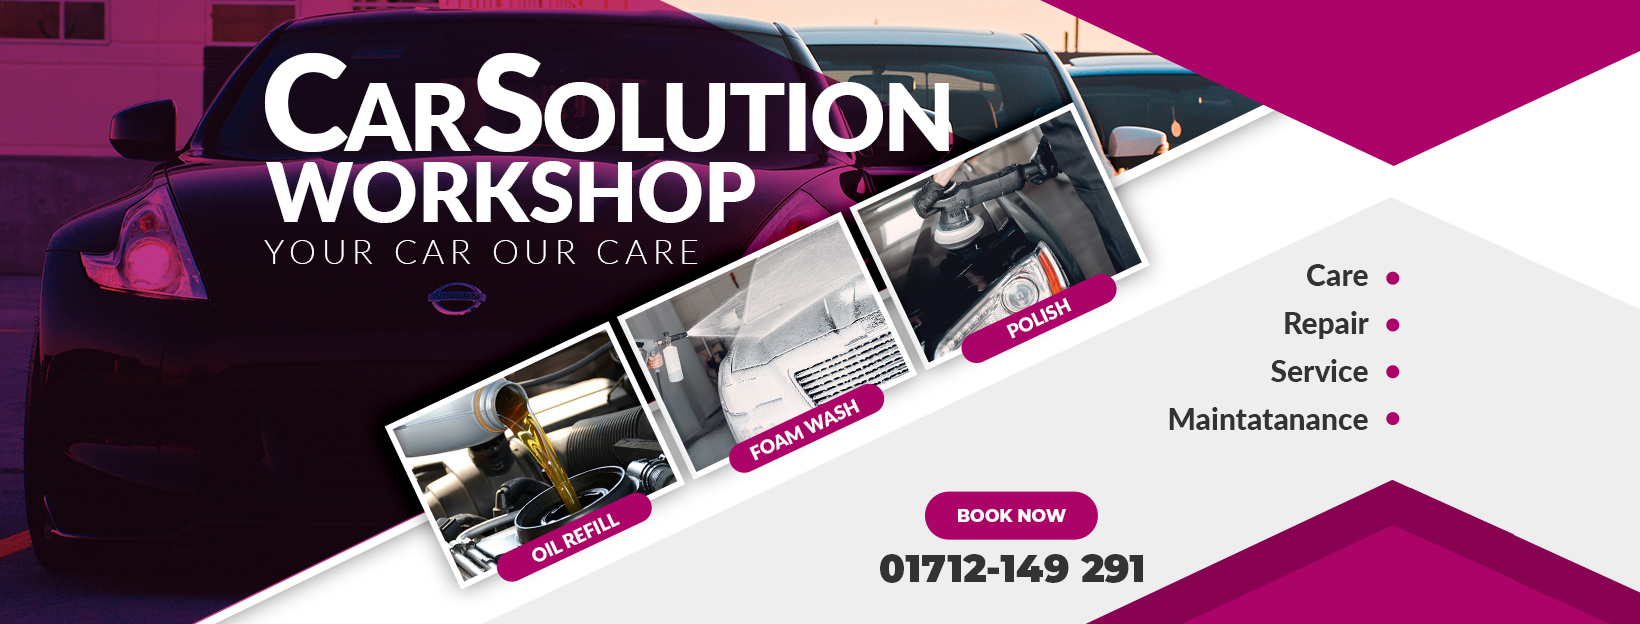 Car Solution Workshop